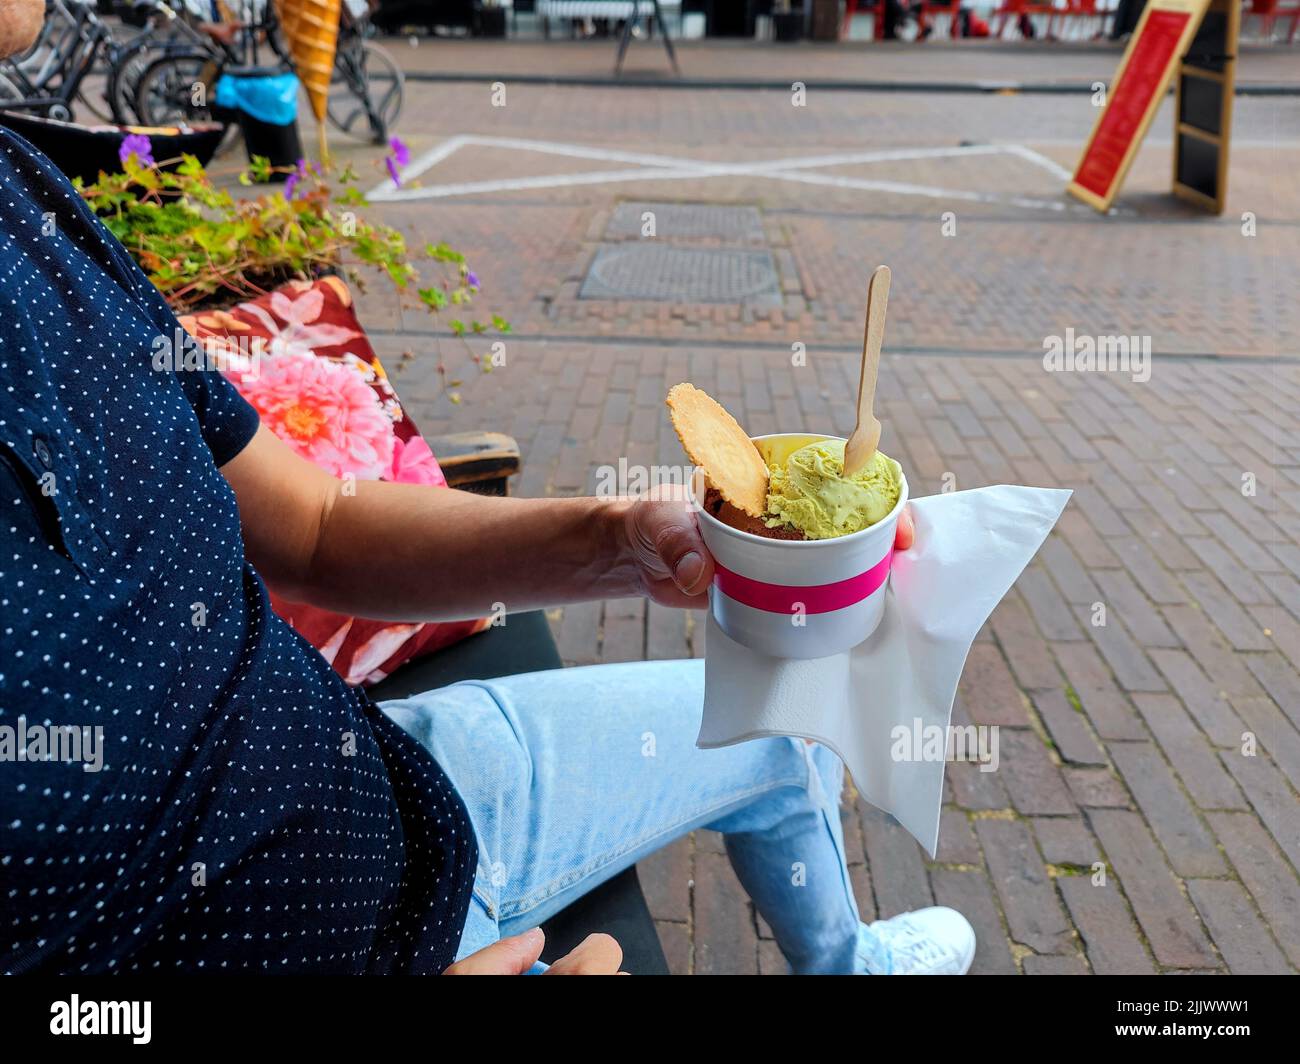 La mano bianca maschio tiene una tazza con le palette di gelato su una panca vicino ad un negozio di gelato. Non ci sono persone o marchi riconoscibili nella foto Foto Stock